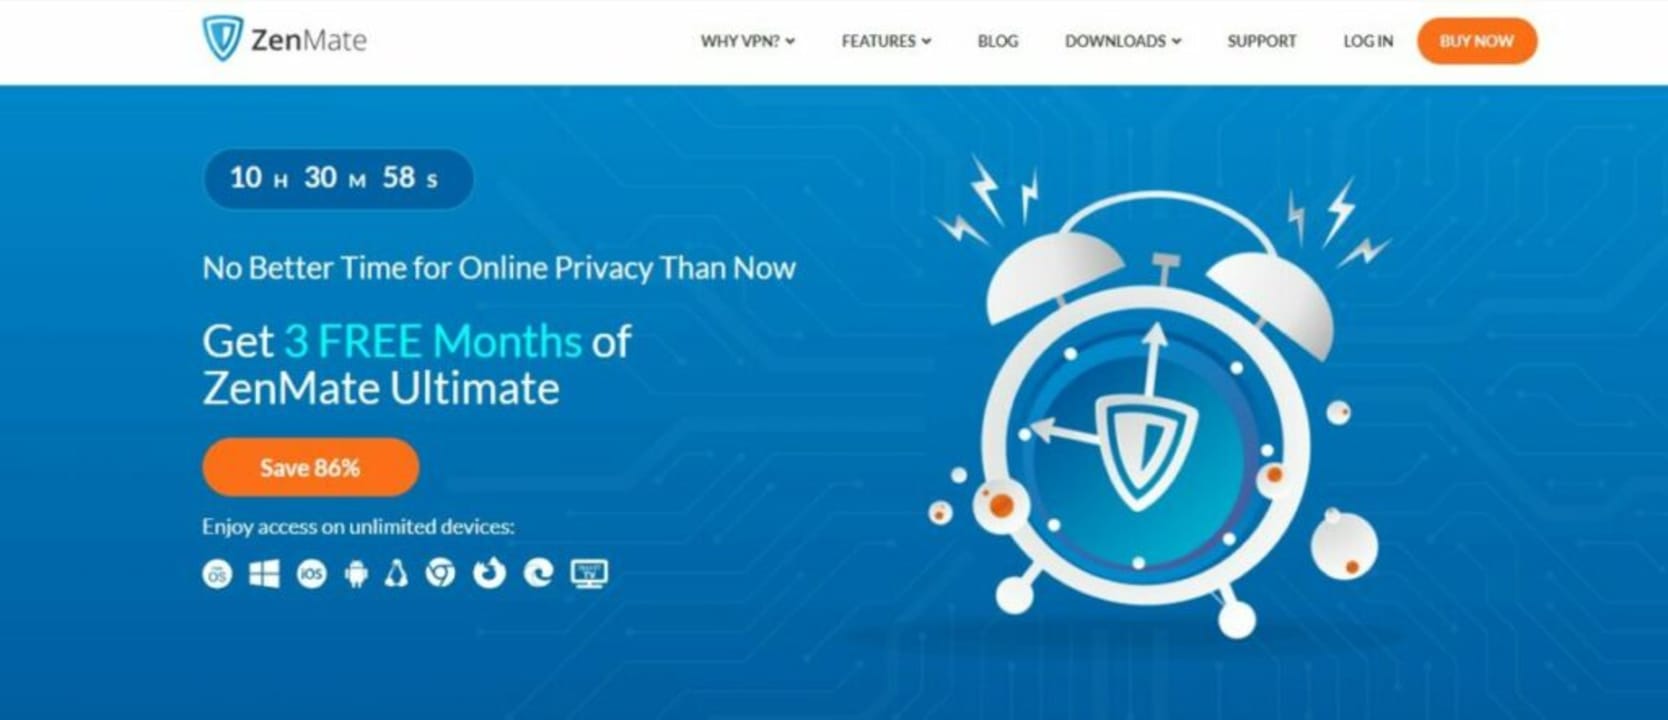 15 Best VPNs for Chrome